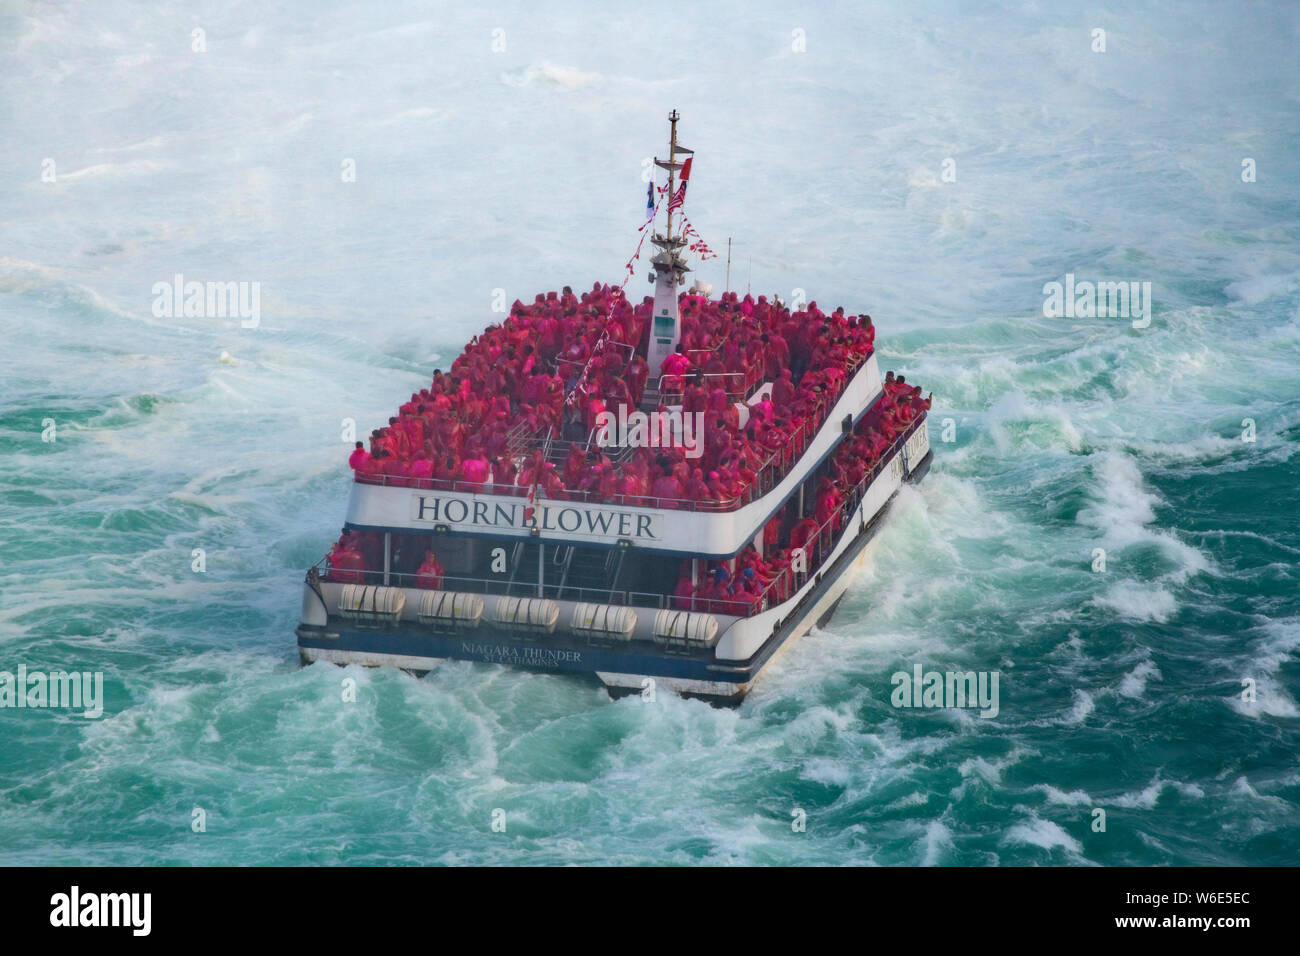 Boat che trasportano i turisti in fondo alle Cascate del Niagara Foto Stock